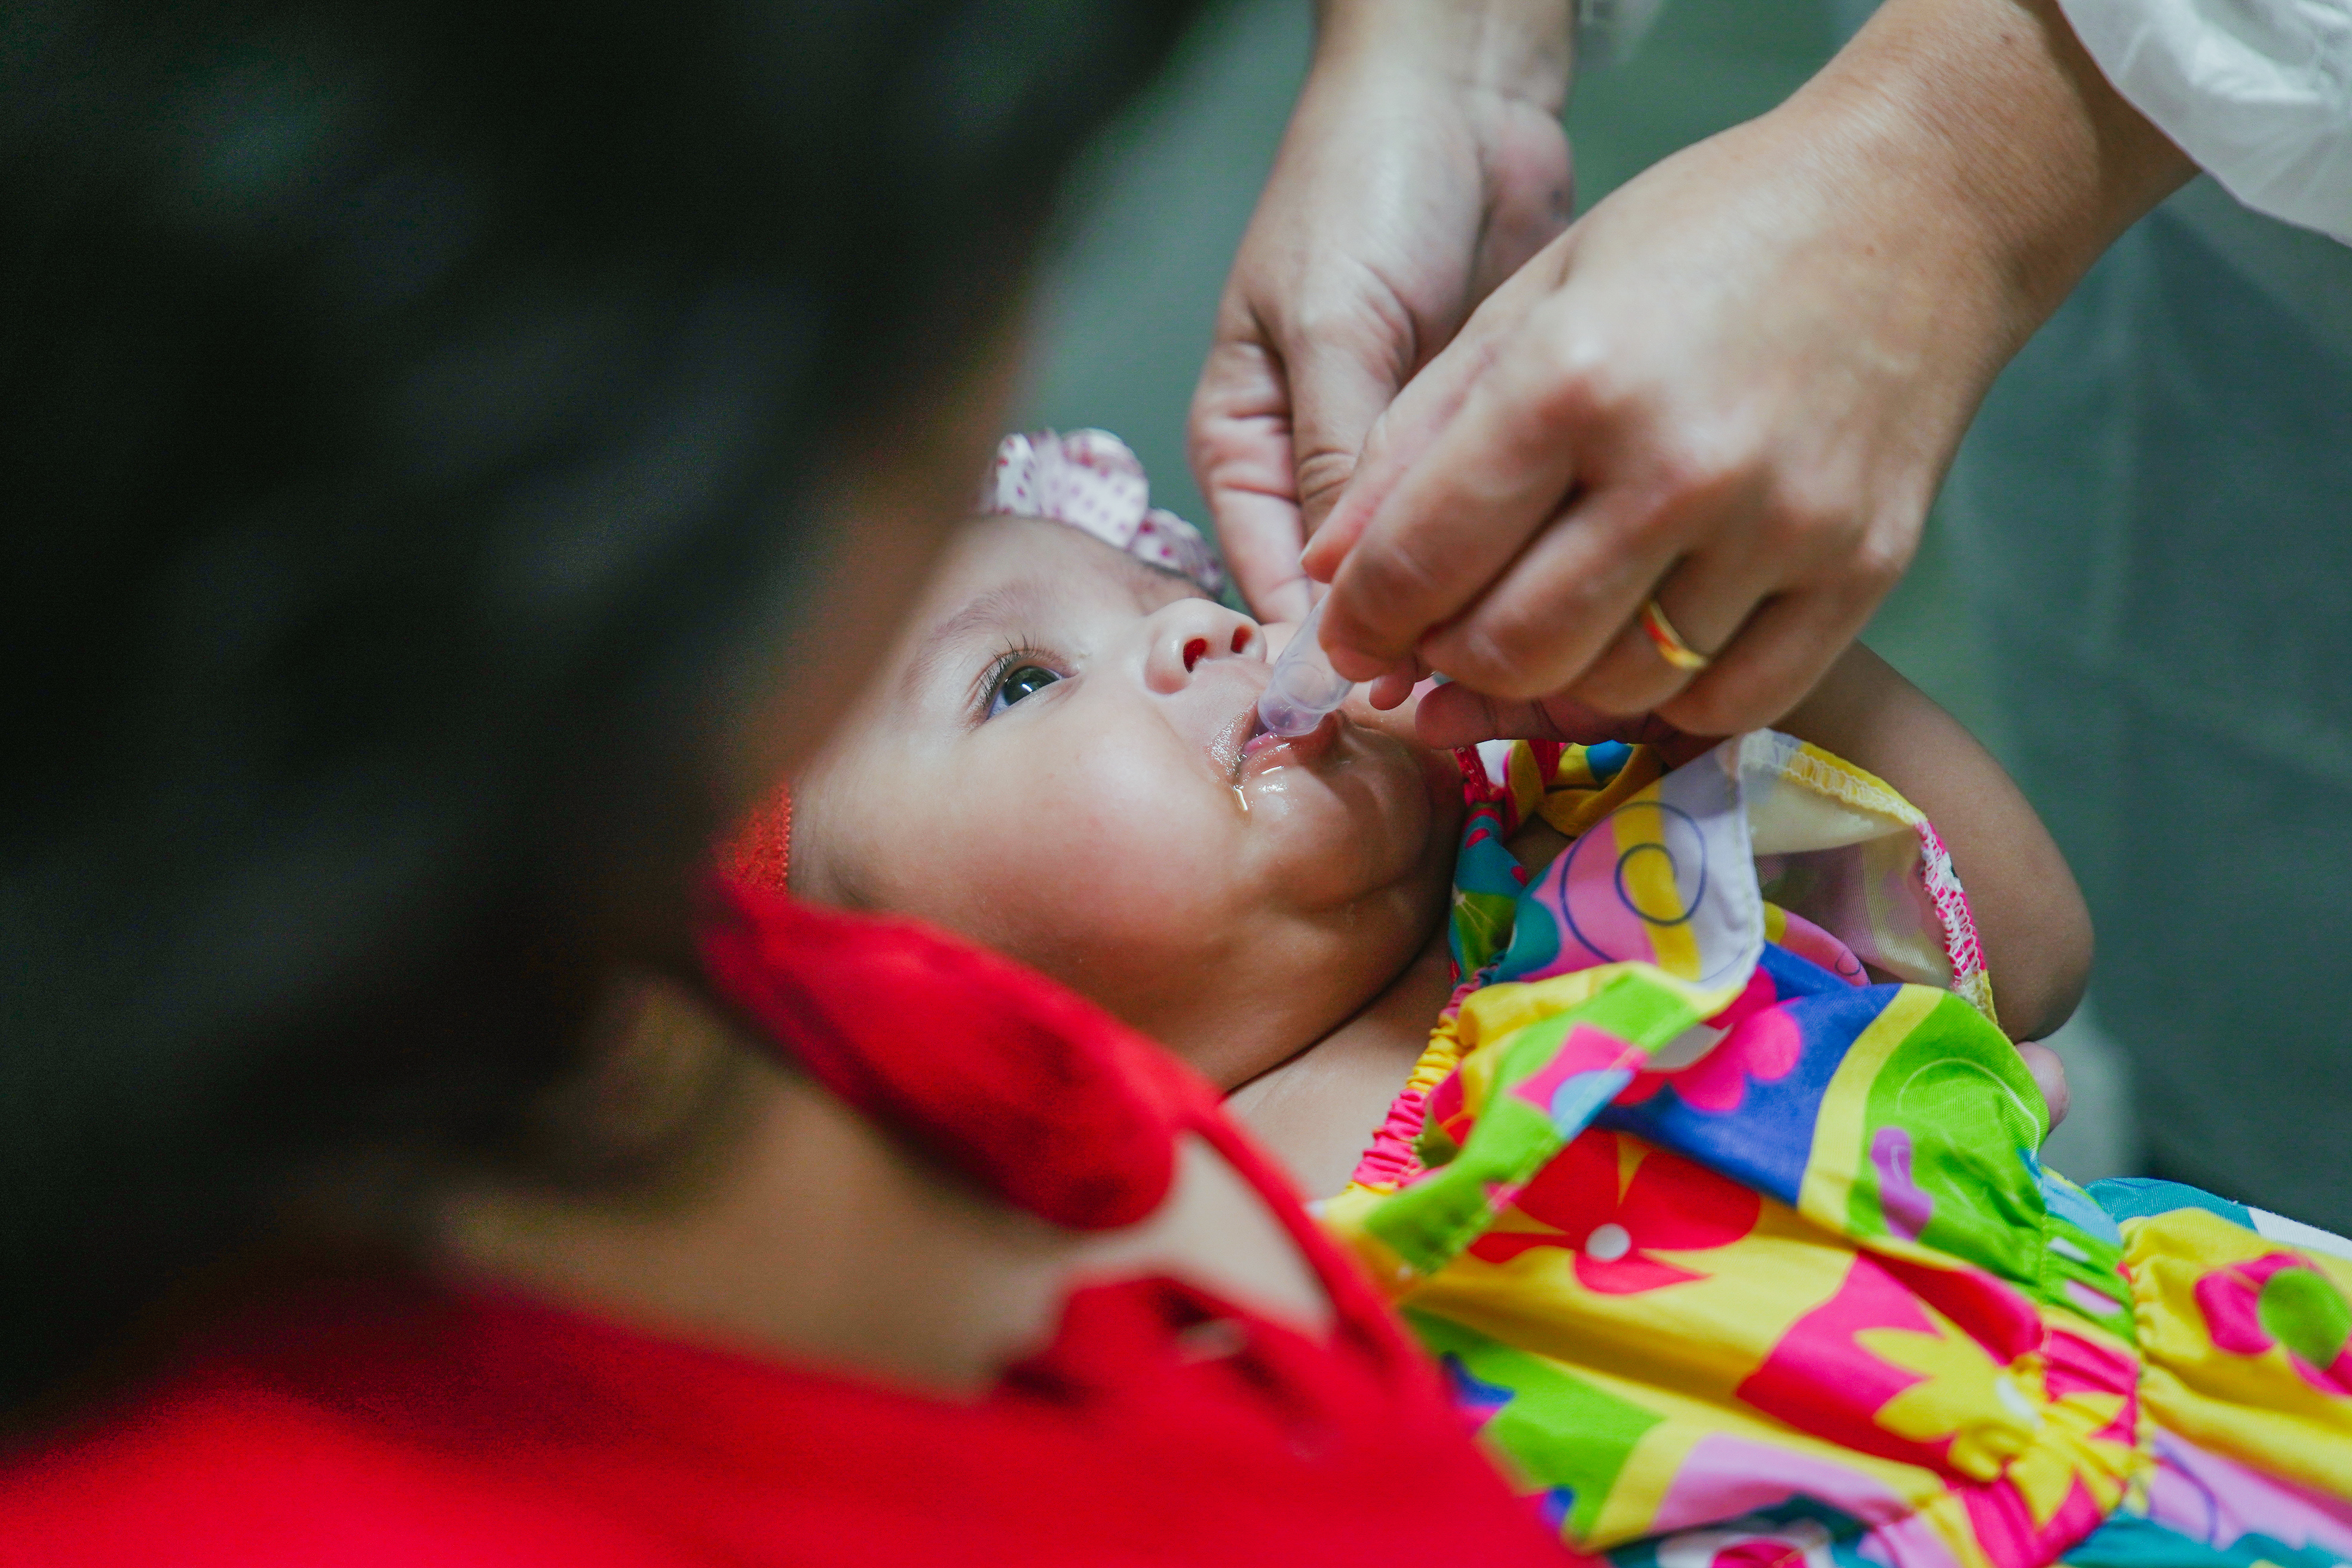 criança recebendo gotinha contra a poliomielite